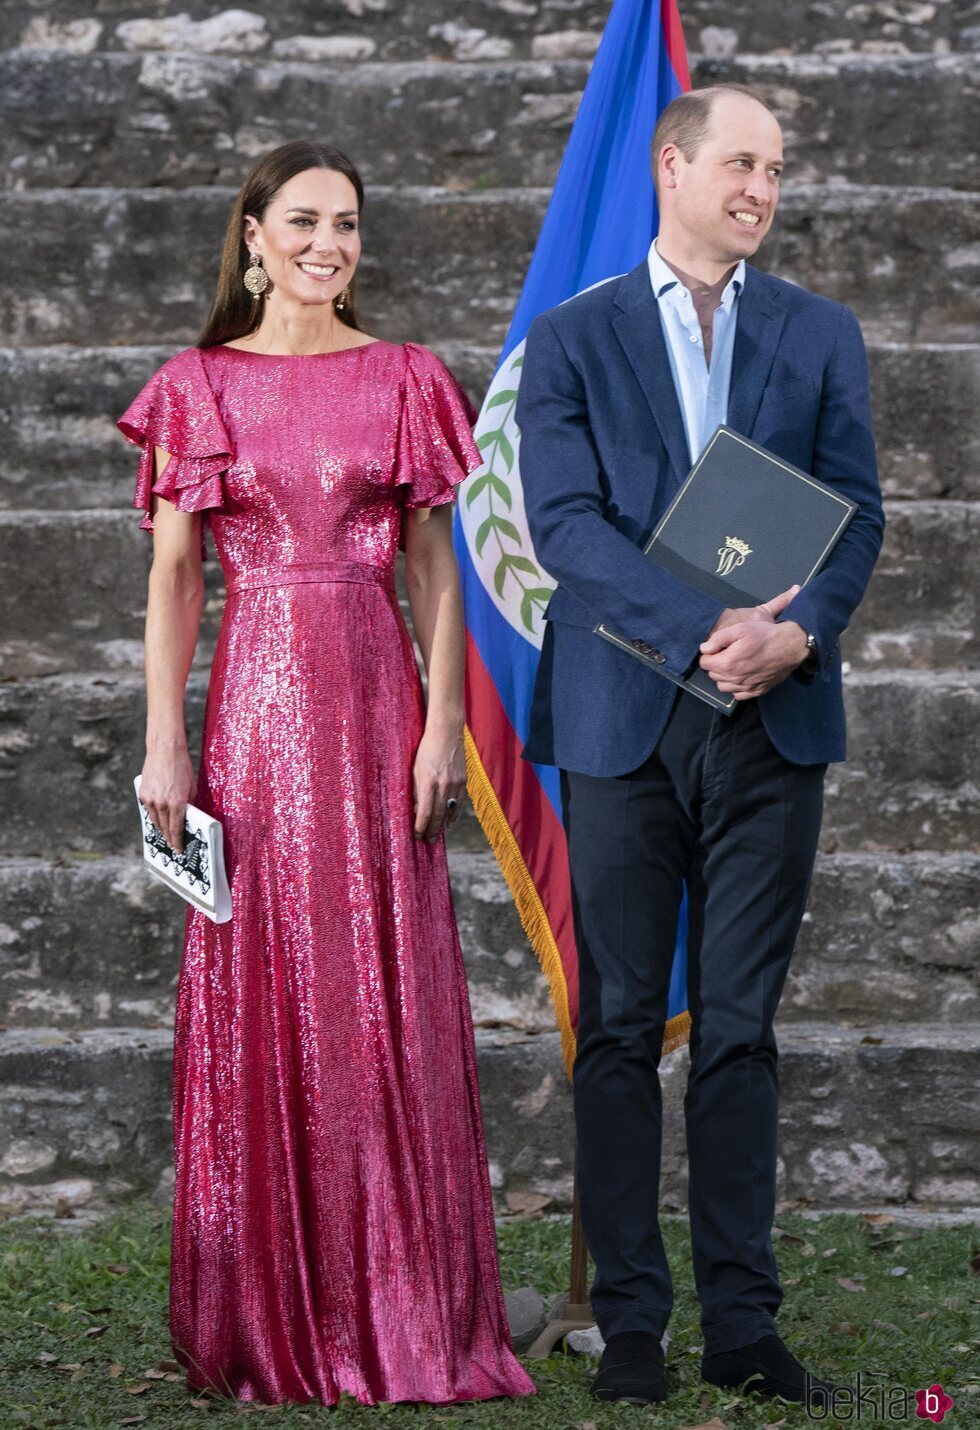 El Príncipe Guillermo y Kate Middleton en una recepción en su honor en Belice